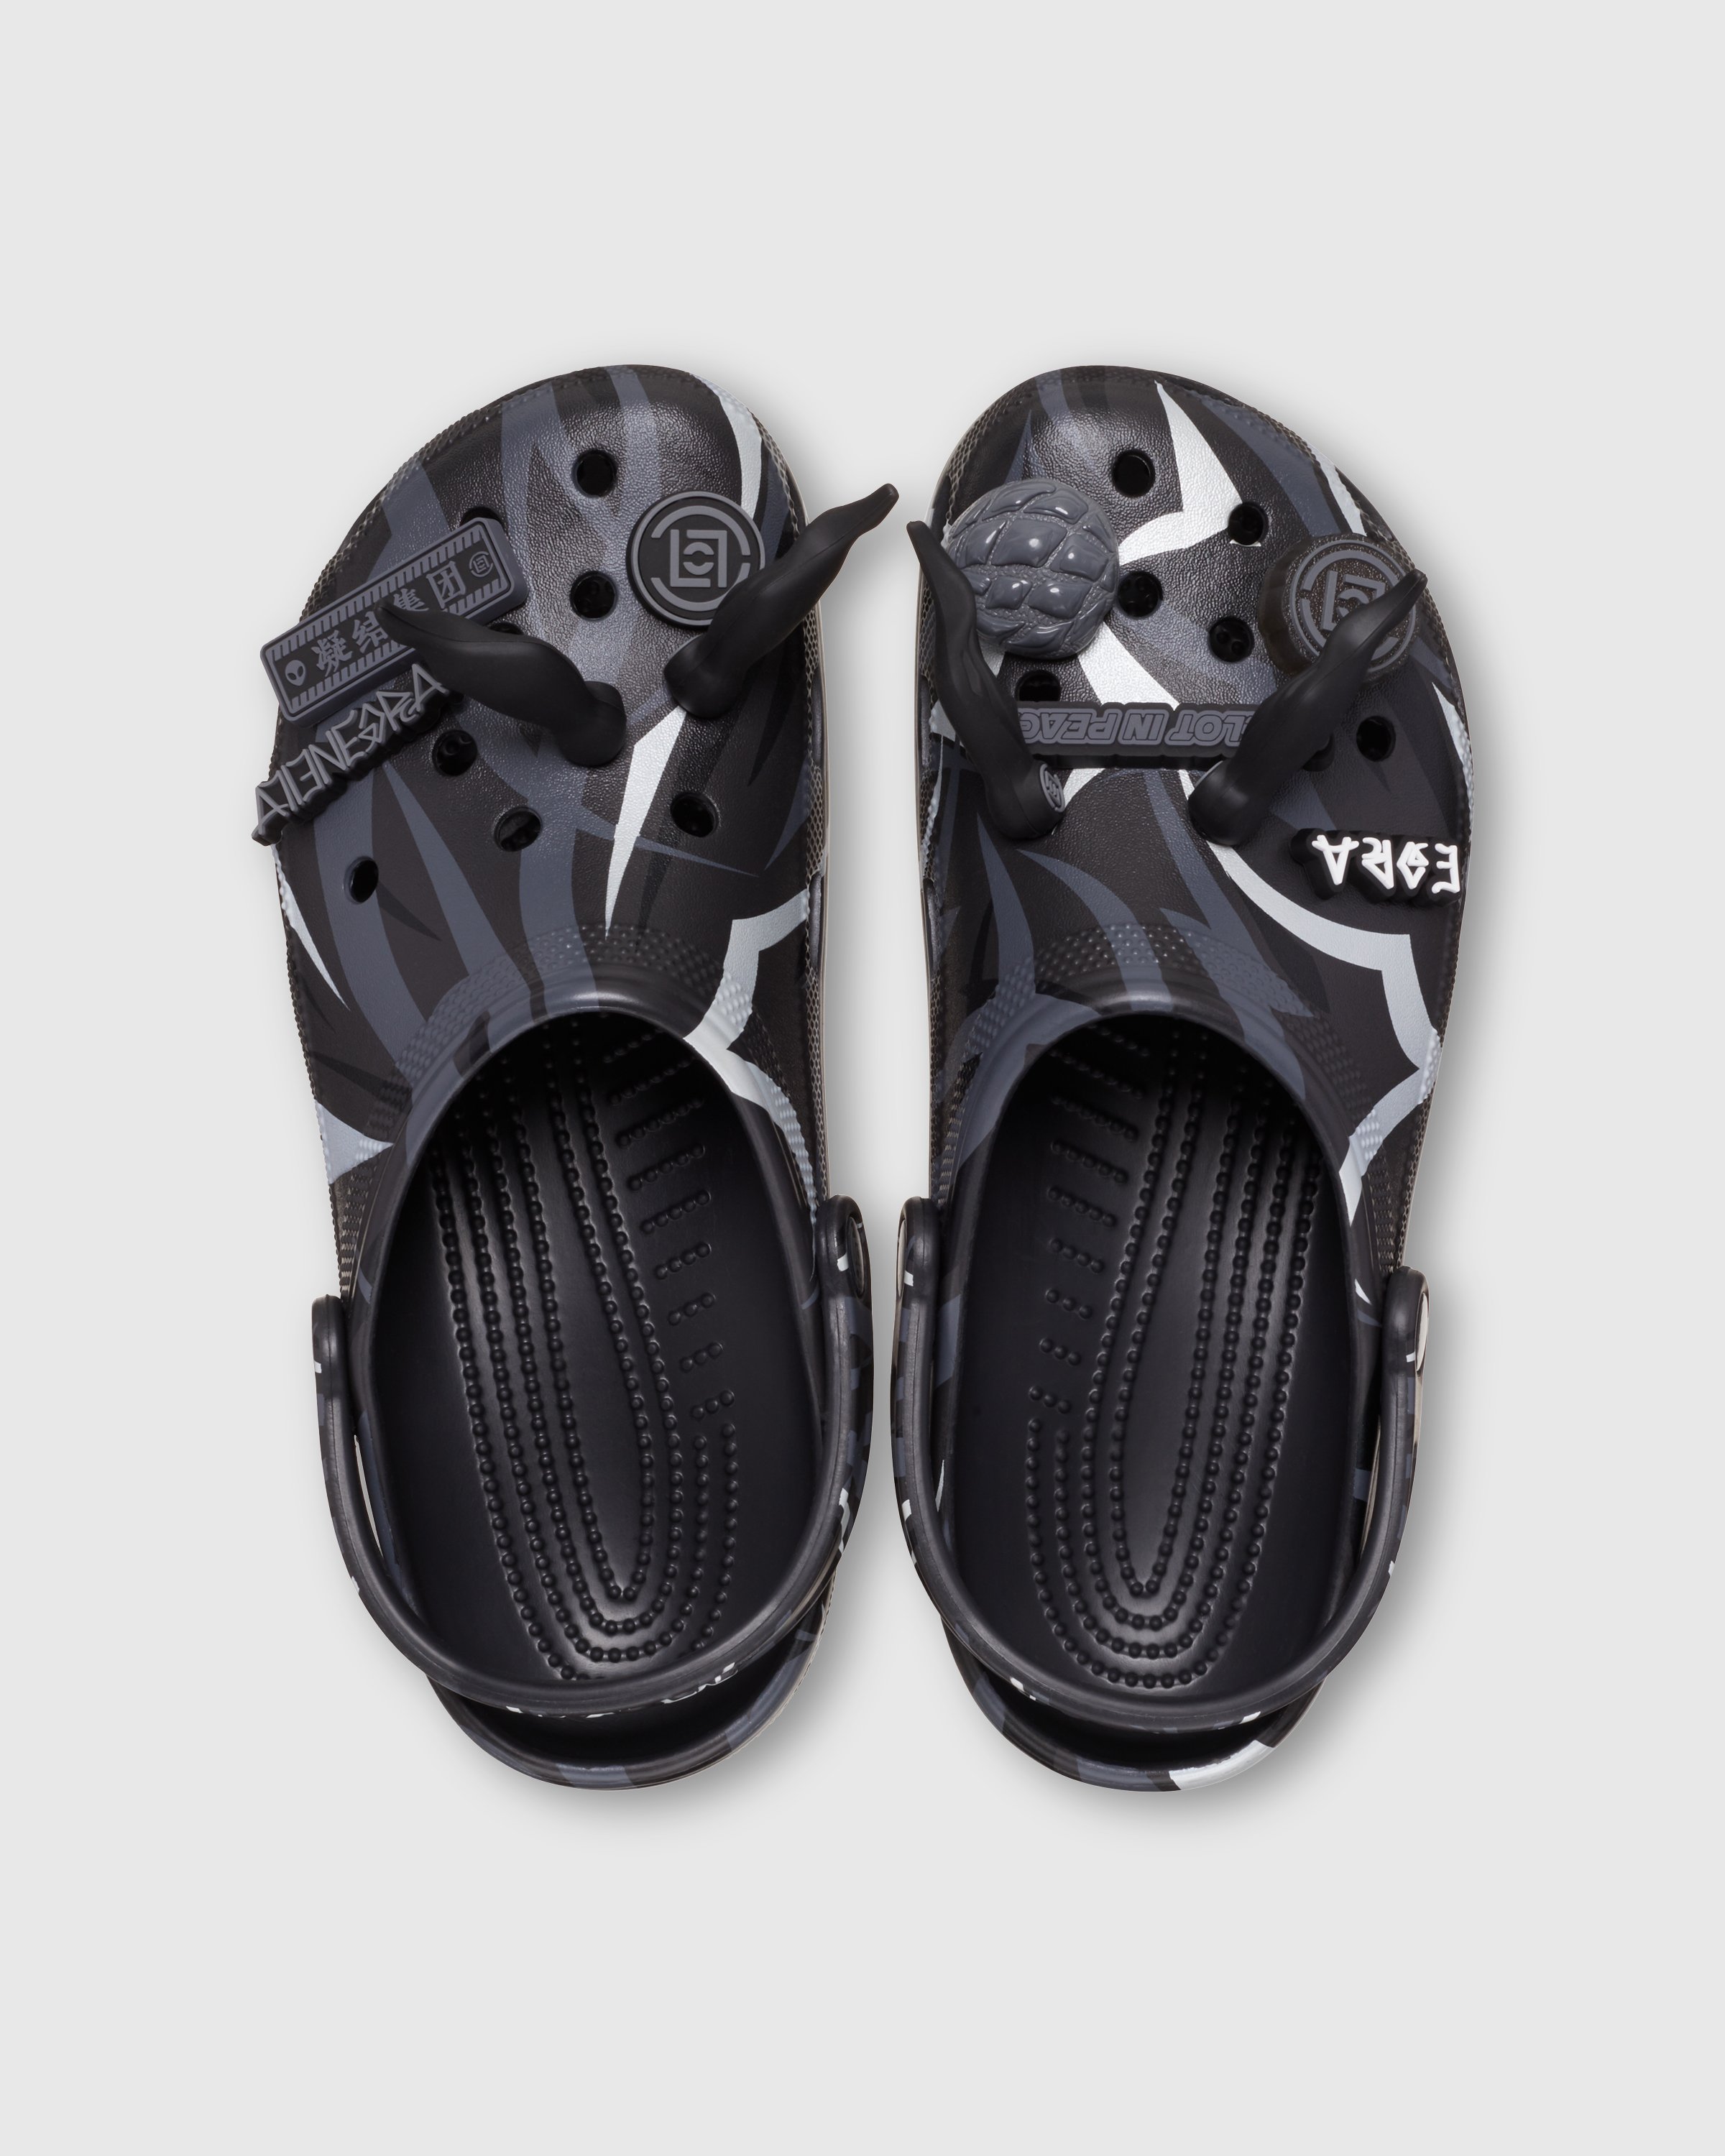 CLOT x Crocs - Classic Clog Black - Footwear - Black - Image 4